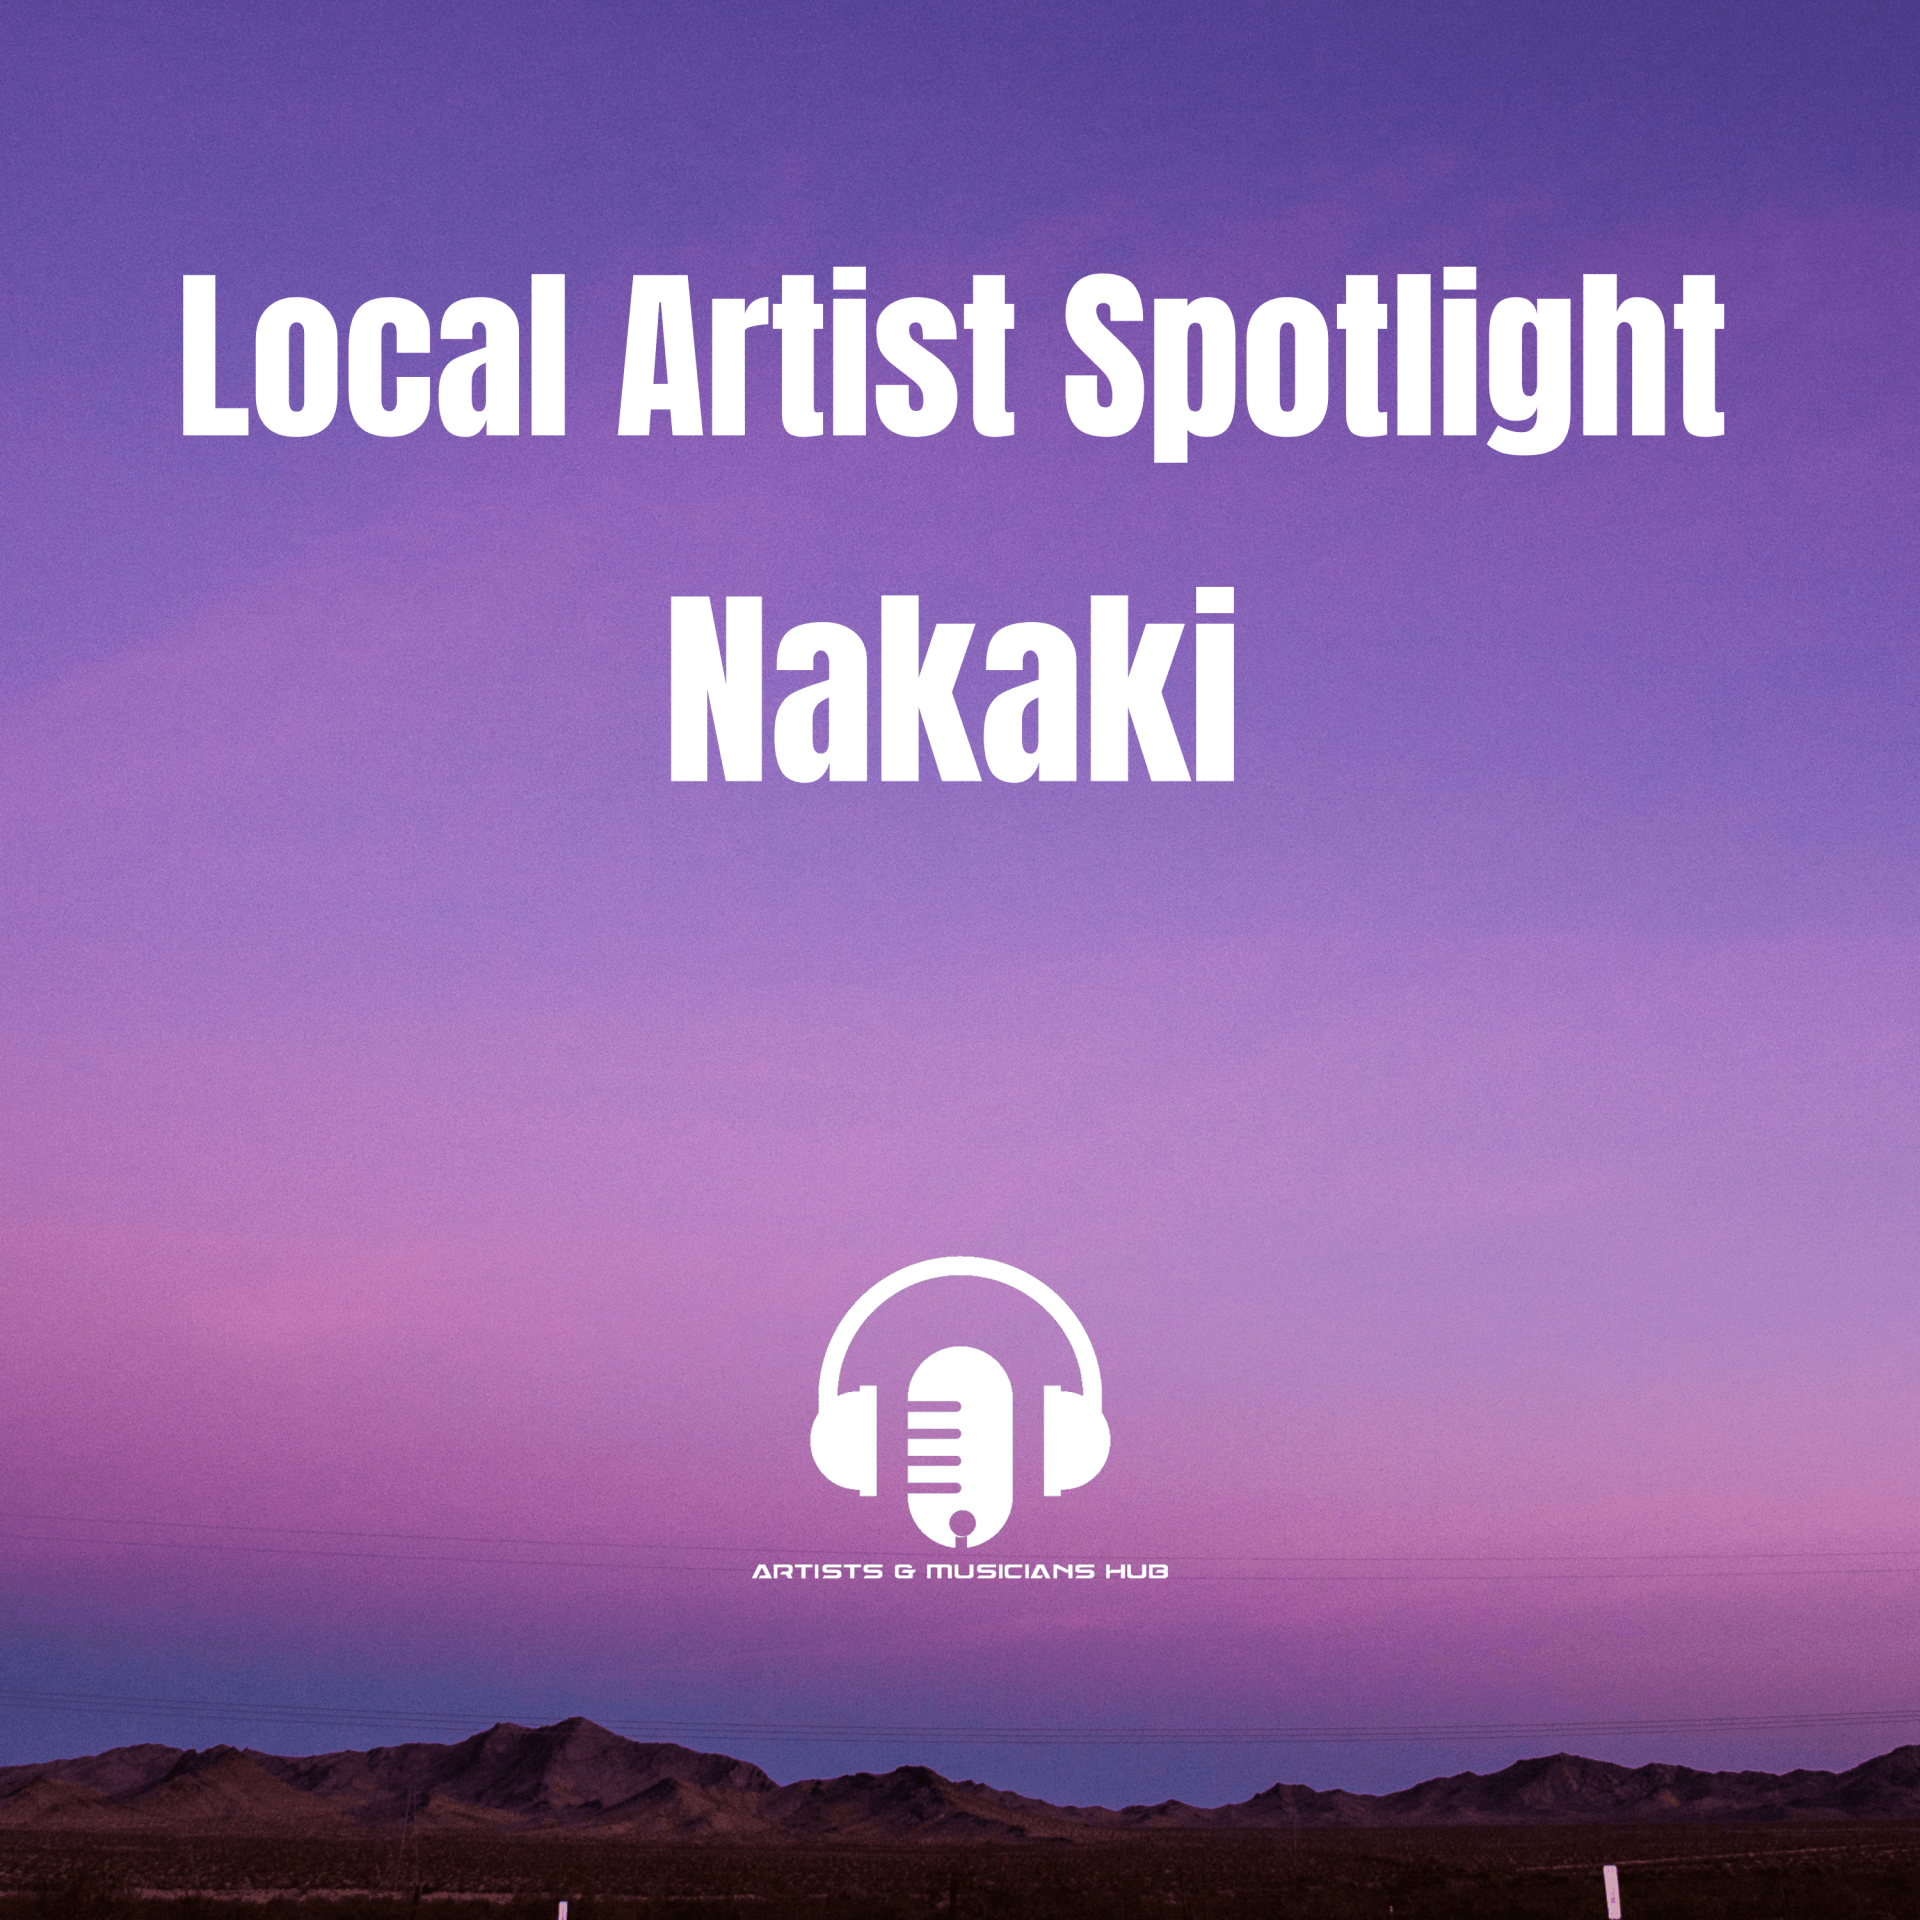 Local Artist Spotlight - Nakaki